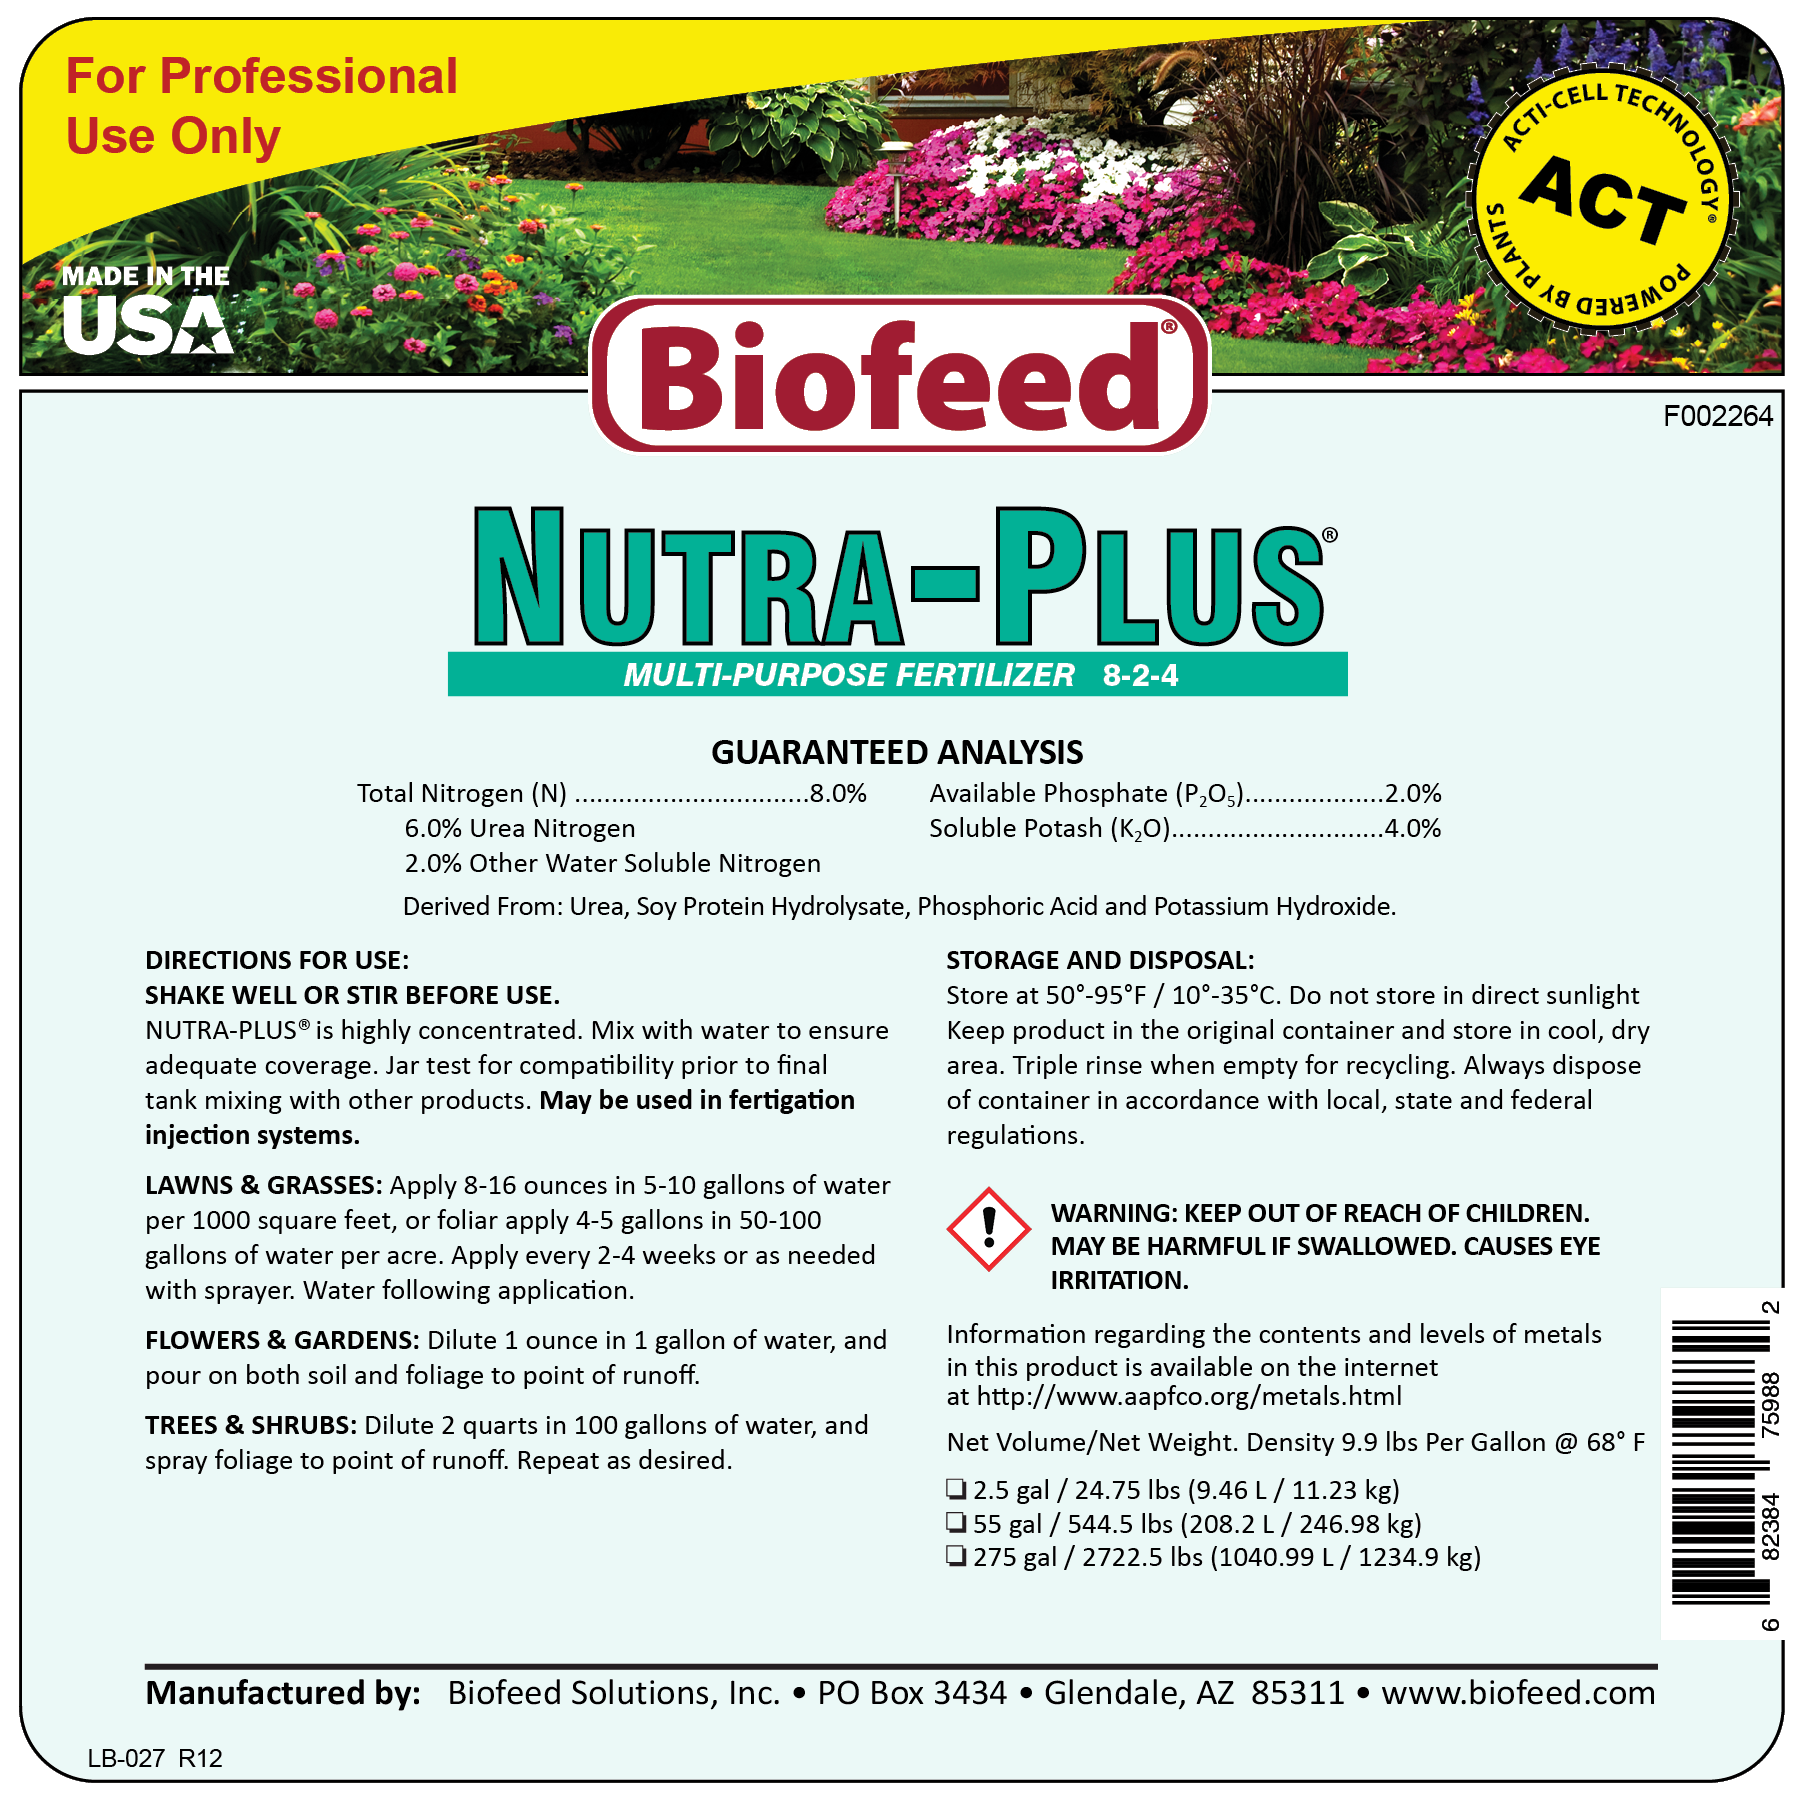 nutra-plus multi-purpose liquid fertilizer